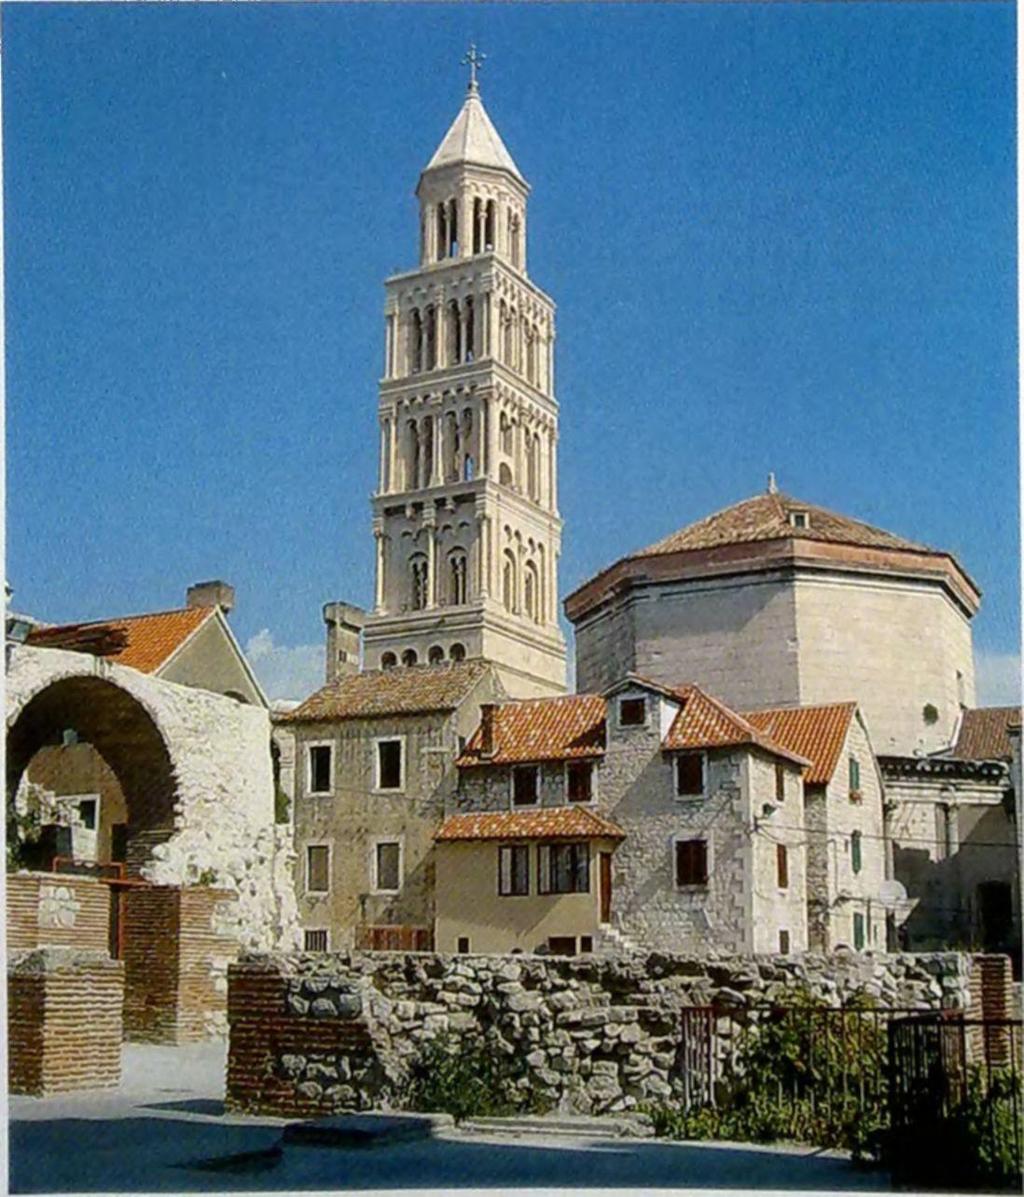 I. (NAGY) LAJOS URALMA A dalmáciai Trau (ma Trogir) erődítménye Spalato (ma Split) óvárosa a katedrálissal Lajost és utódait a terület egyedüli urának, a dalmát hajóknak pedig szabad kereskedést